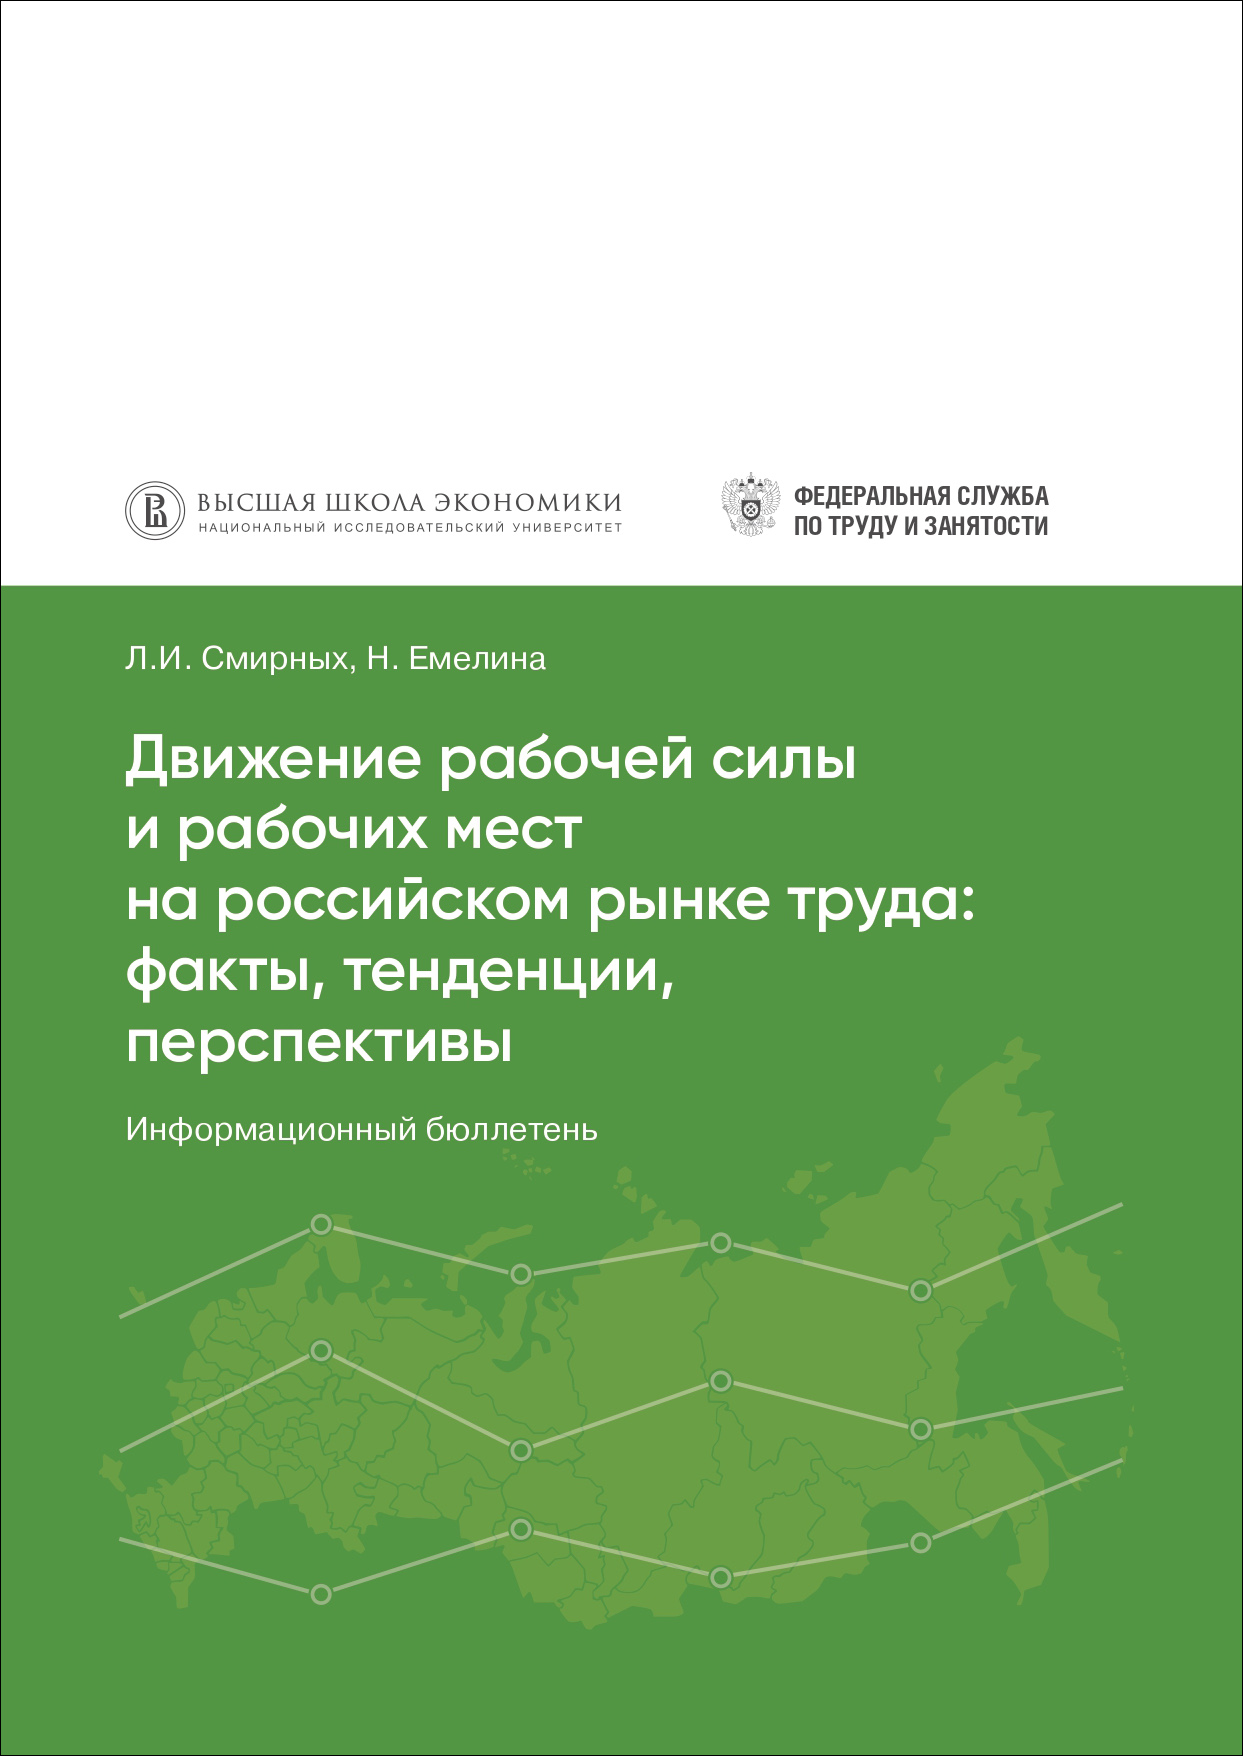 Движение рабочей силы и рабочих мест на российском рынке труда: факты, тенденции, перспективы